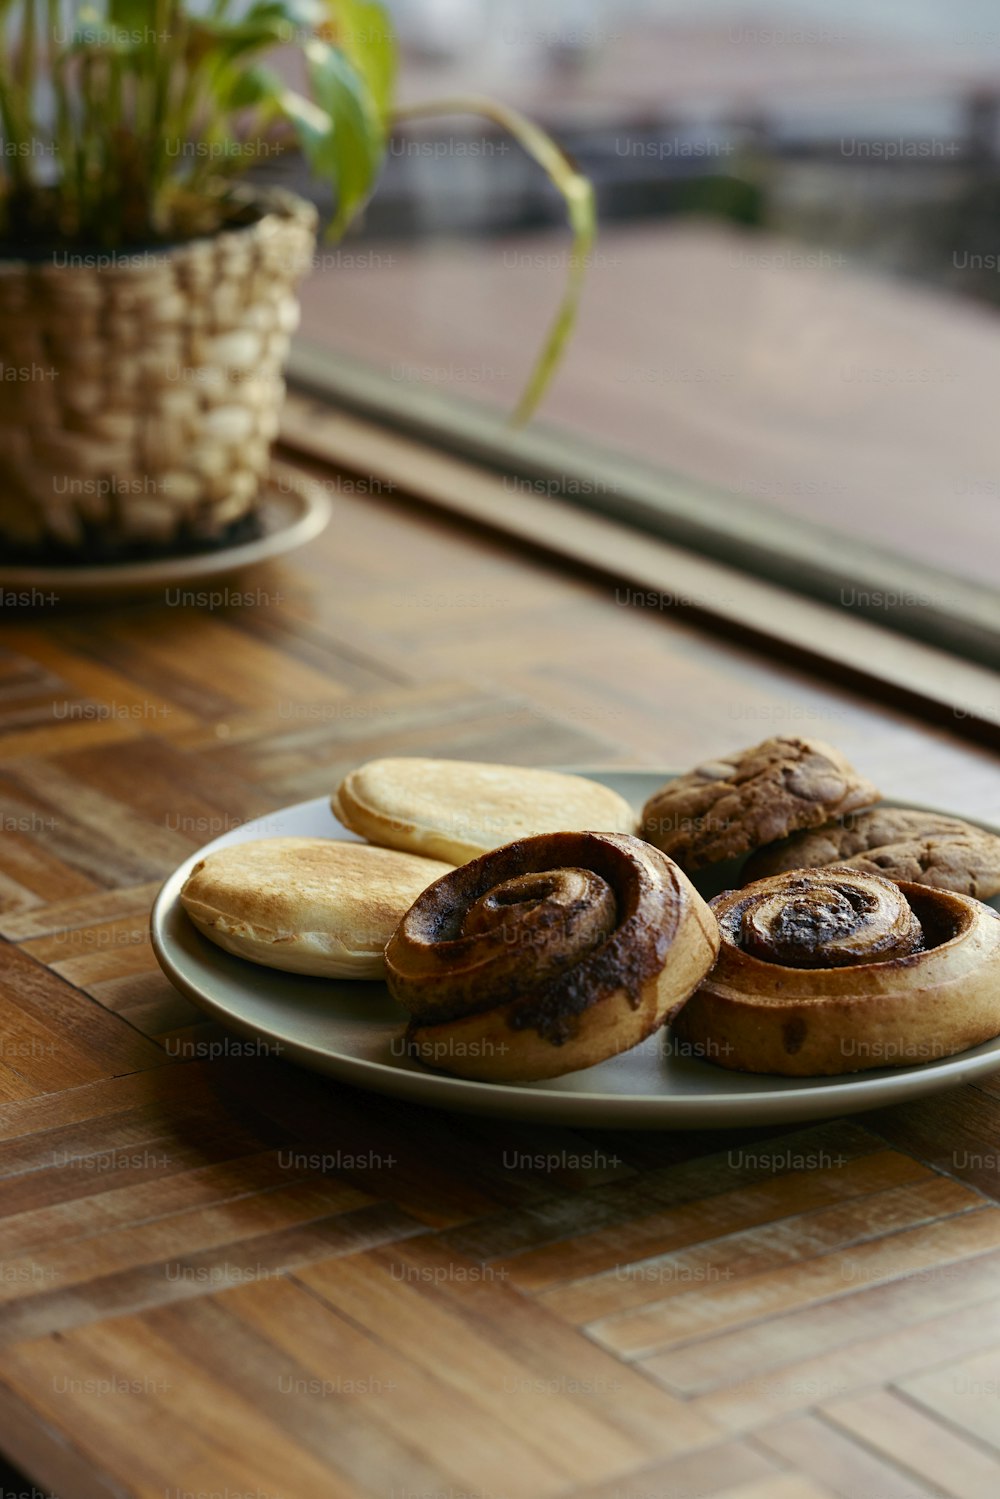 Un plato de galletas sentado en una mesa junto a una planta en maceta